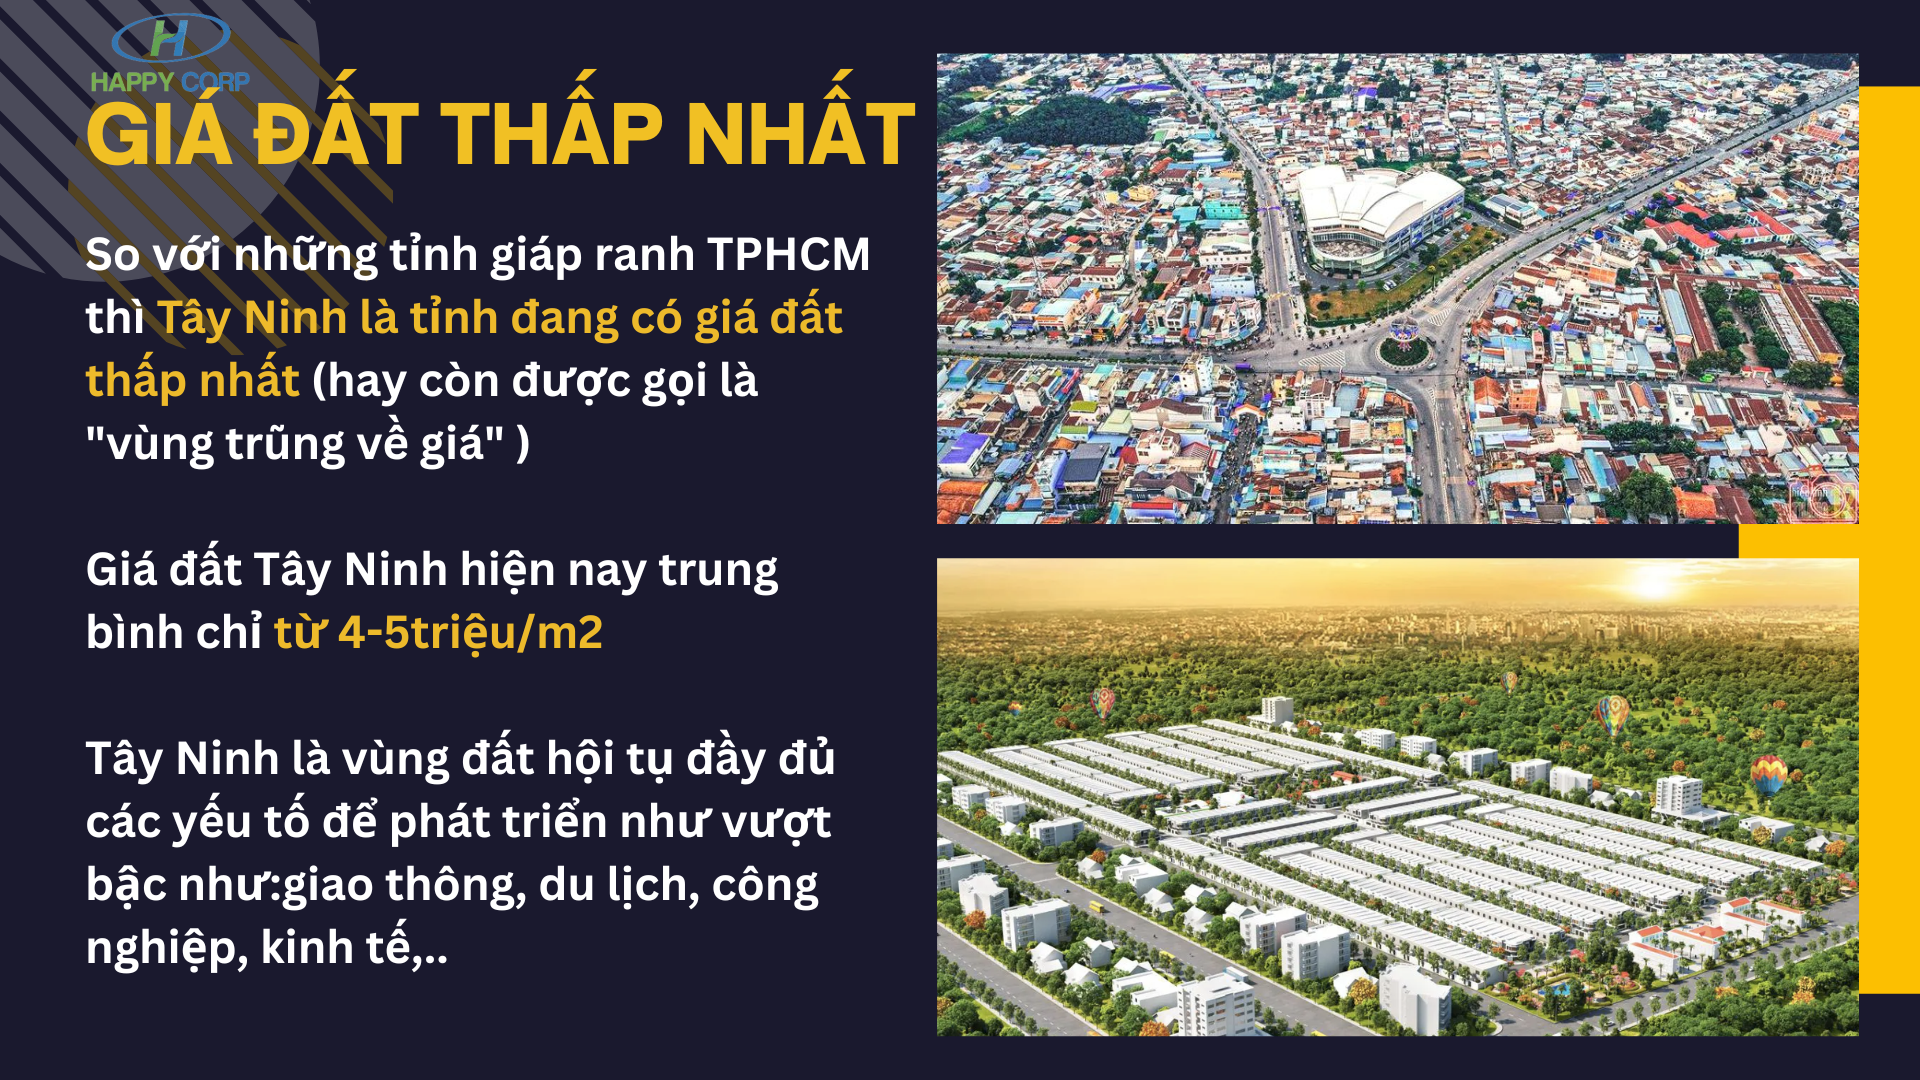 Giá đất Tây Ninh rẻ nhất so với những tỉnh giáp ranh TP. HCM